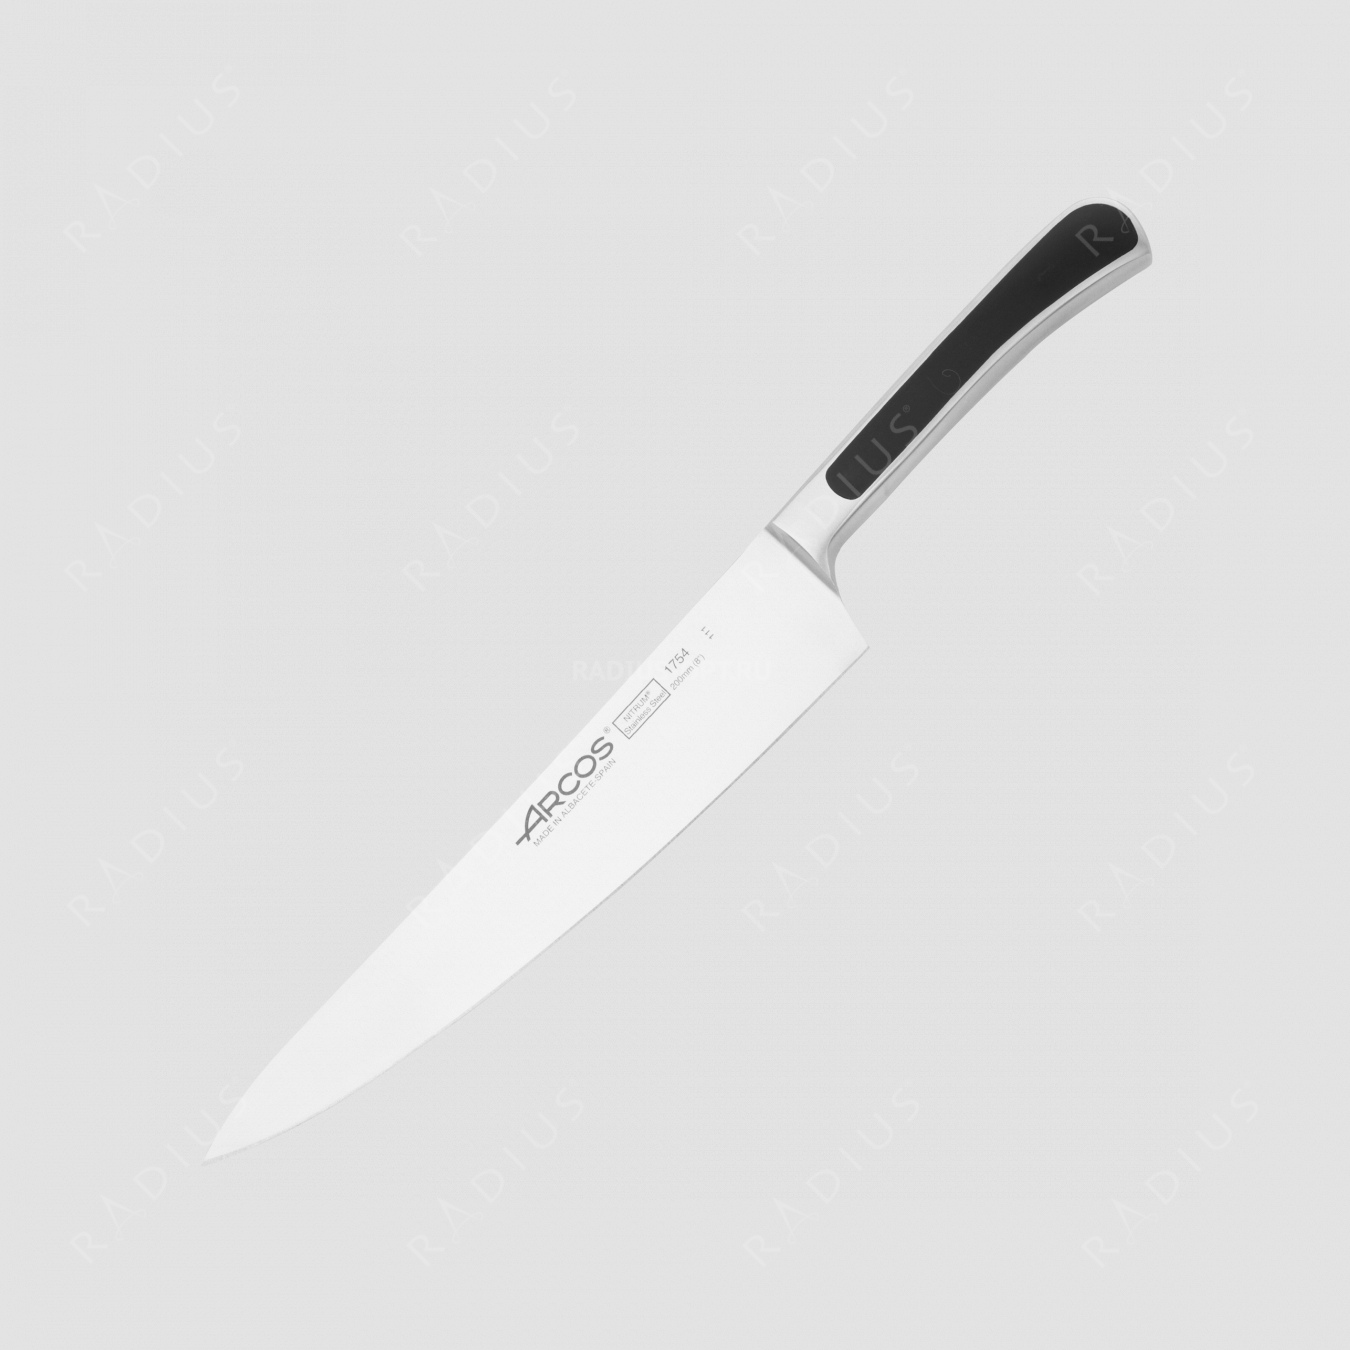 Нож кухонный поварской 20 см, серия Saeta, ARCOS, Испания